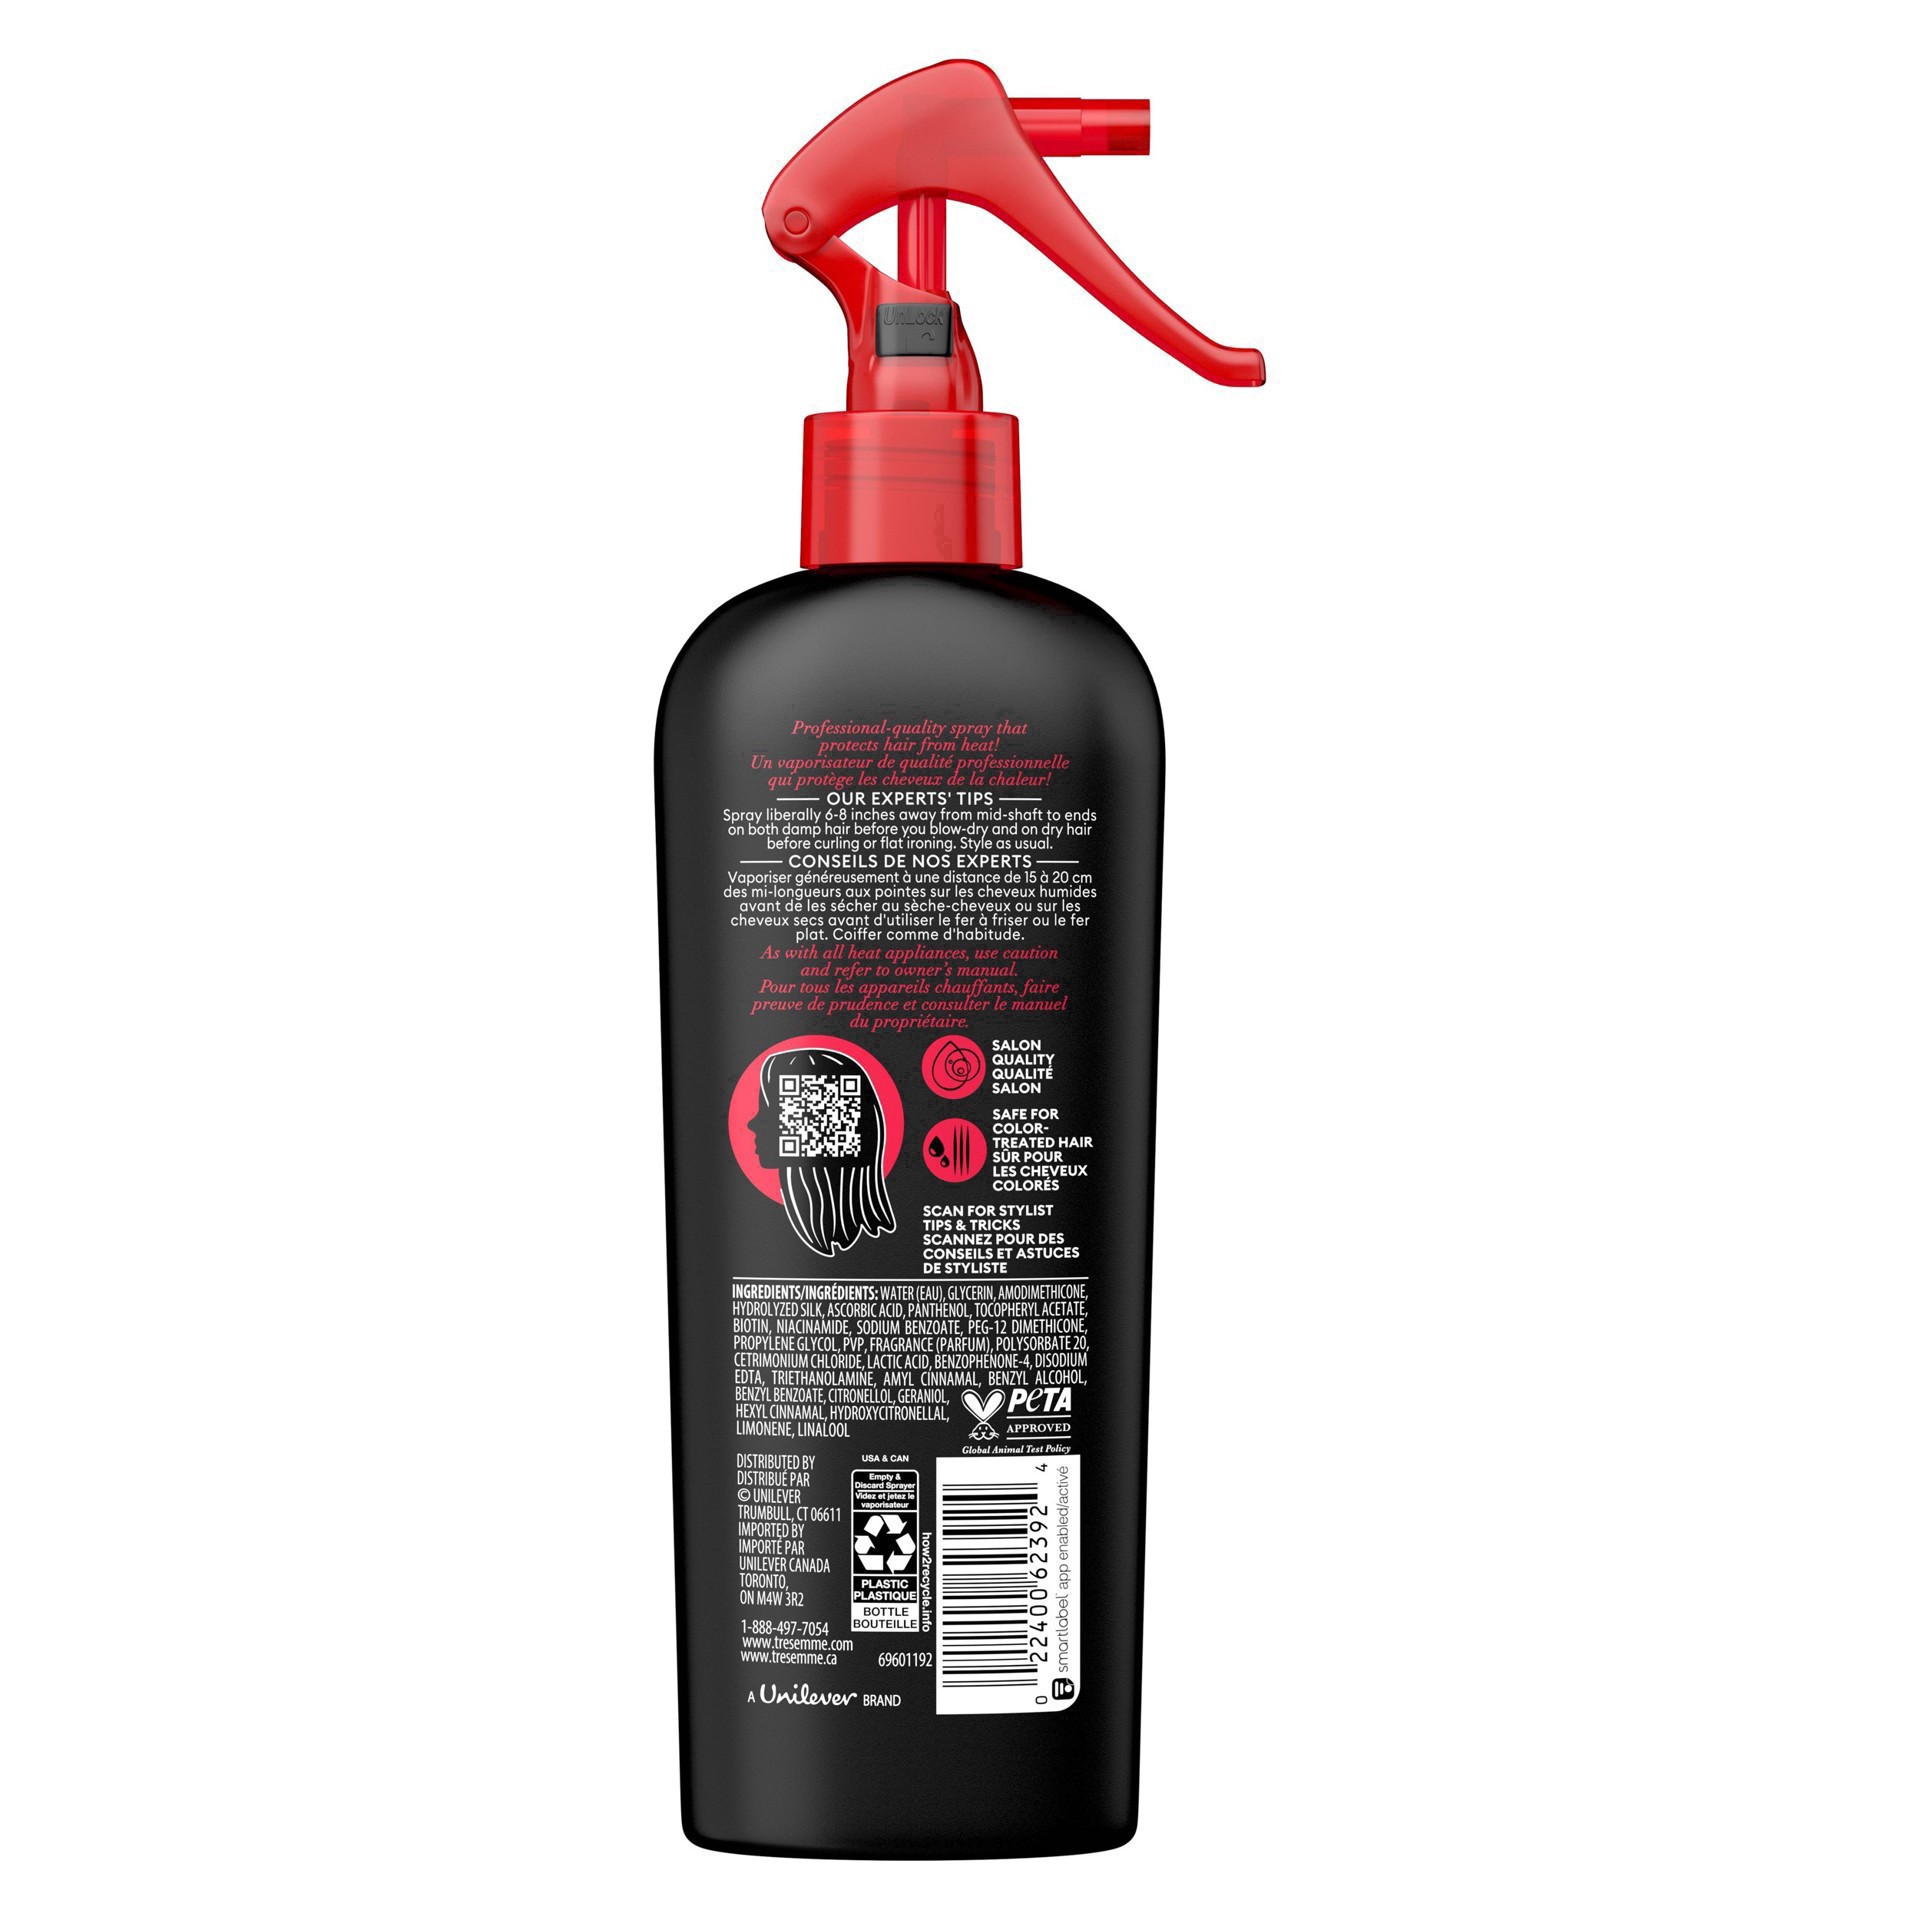 slide 11 of 92, TRESemmé Tresemme Heat Protection Hairspray - 8 fl oz, 8 fl oz